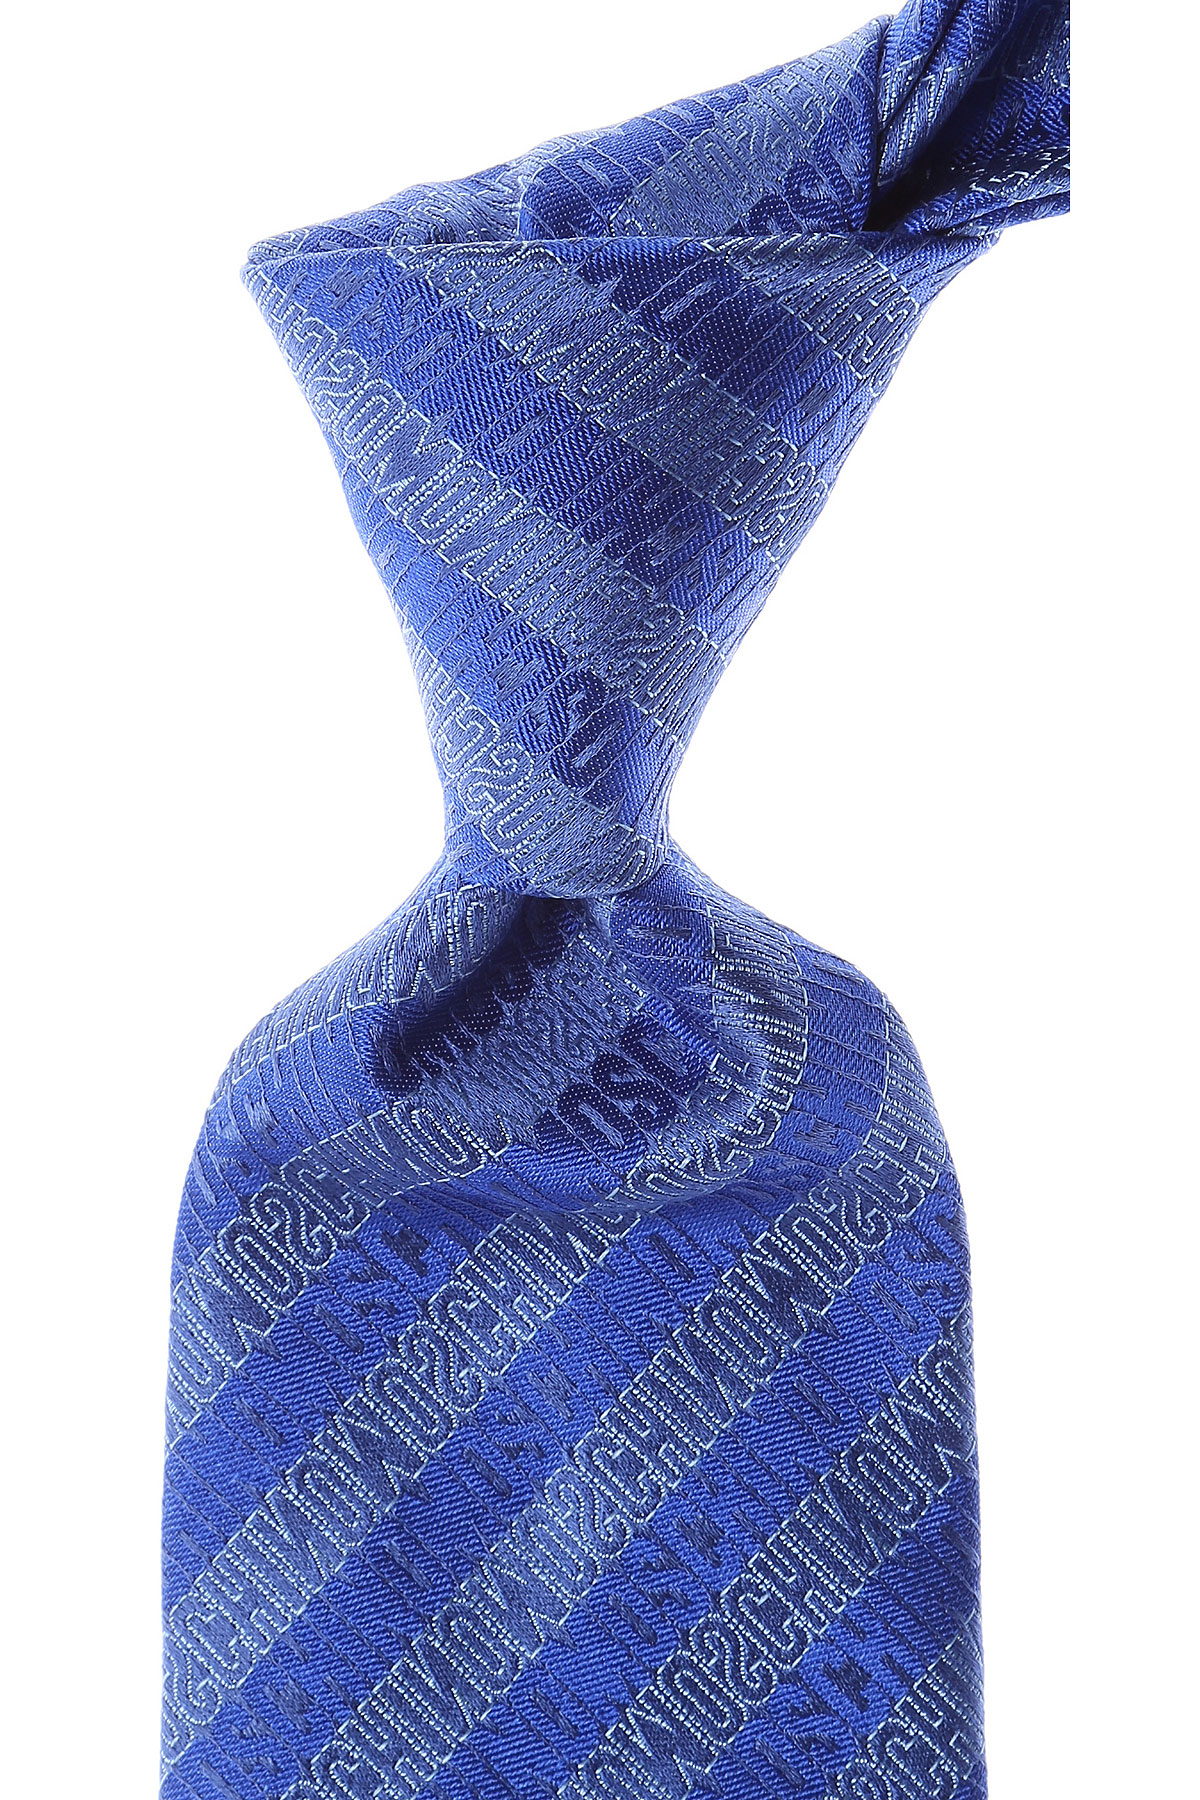 Cravates Moschino , Bleu électrique, Soie, 2017